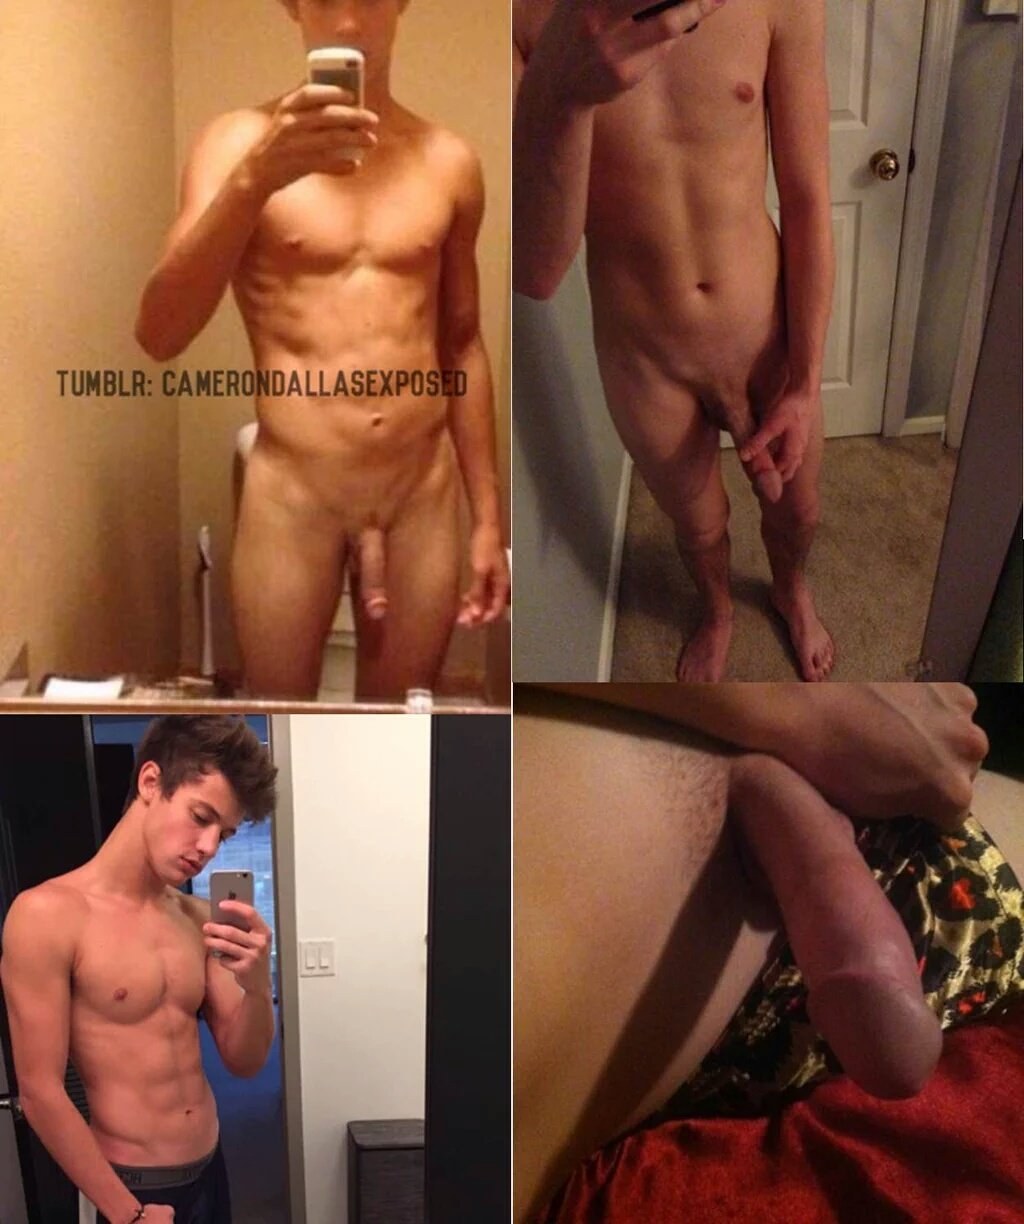 Male celebrity nude leaks